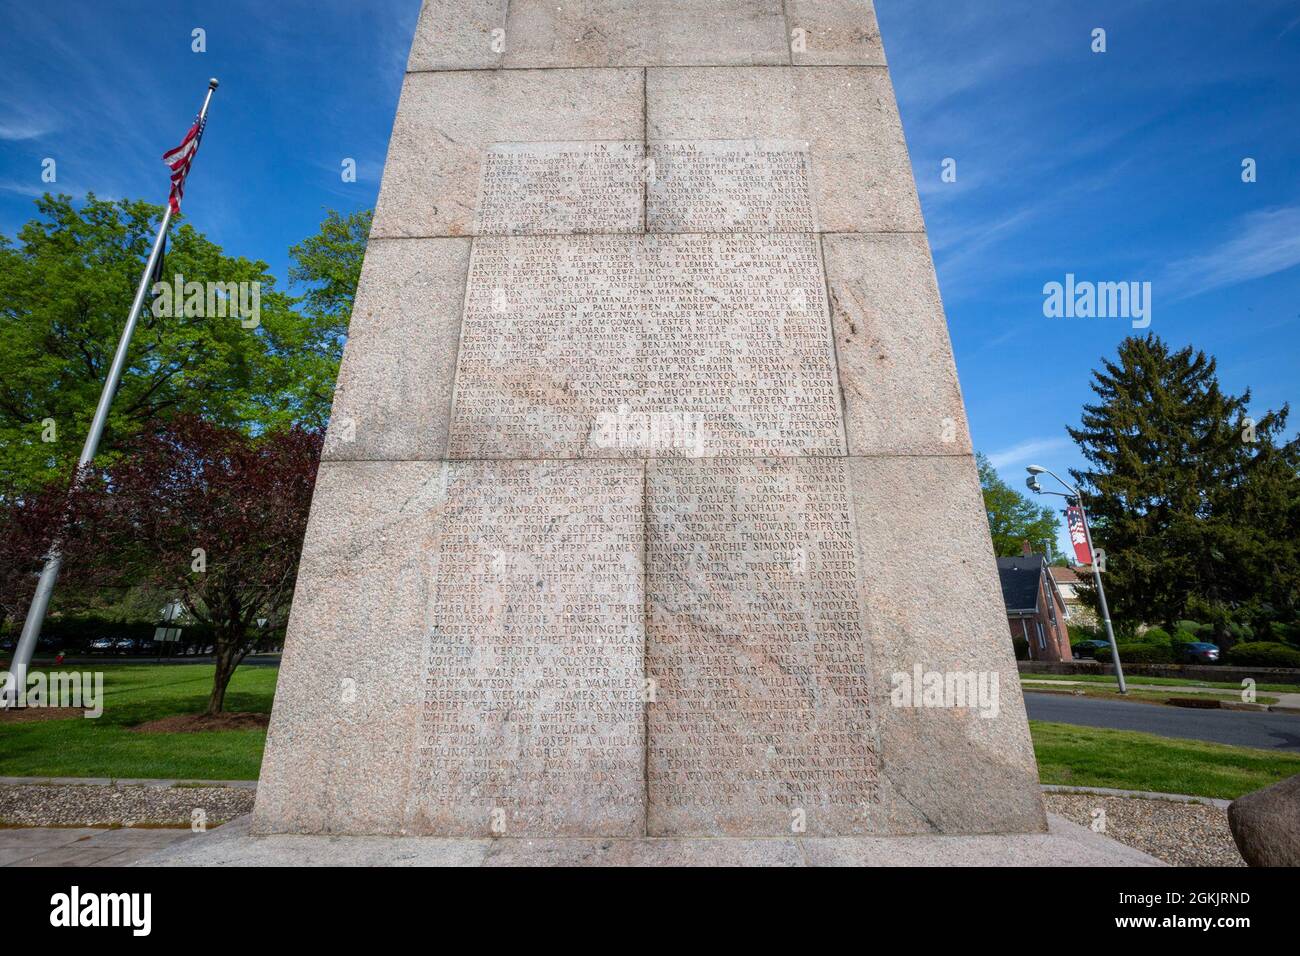 Lista de nombres en el lado este del Monumento Conmemorativo Camp Merritt en Cresskill, N.J., 6 de mayo de 2021. El obelisco de 66 pies de altura, que marcó el centro del campamento, está dedicado a los soldados que se embarcaron en el campamento para luchar en Europa durante la Primera Guerra Mundial. Inscritos en los lados este y oeste del monumento están los nombres de los 573 soldados, cuatro enfermeras y un civil que murieron en el campamento debido a la epidemia de gripe de 1918. En el lado norte es un relieve esculpido por Robert I. Aitken de un Doughboy de la Primera Guerra Mundial. Directamente enfrente hay un mapa dimensional de talla de piedra de Camp Merritt. El Monumento fue Foto de stock